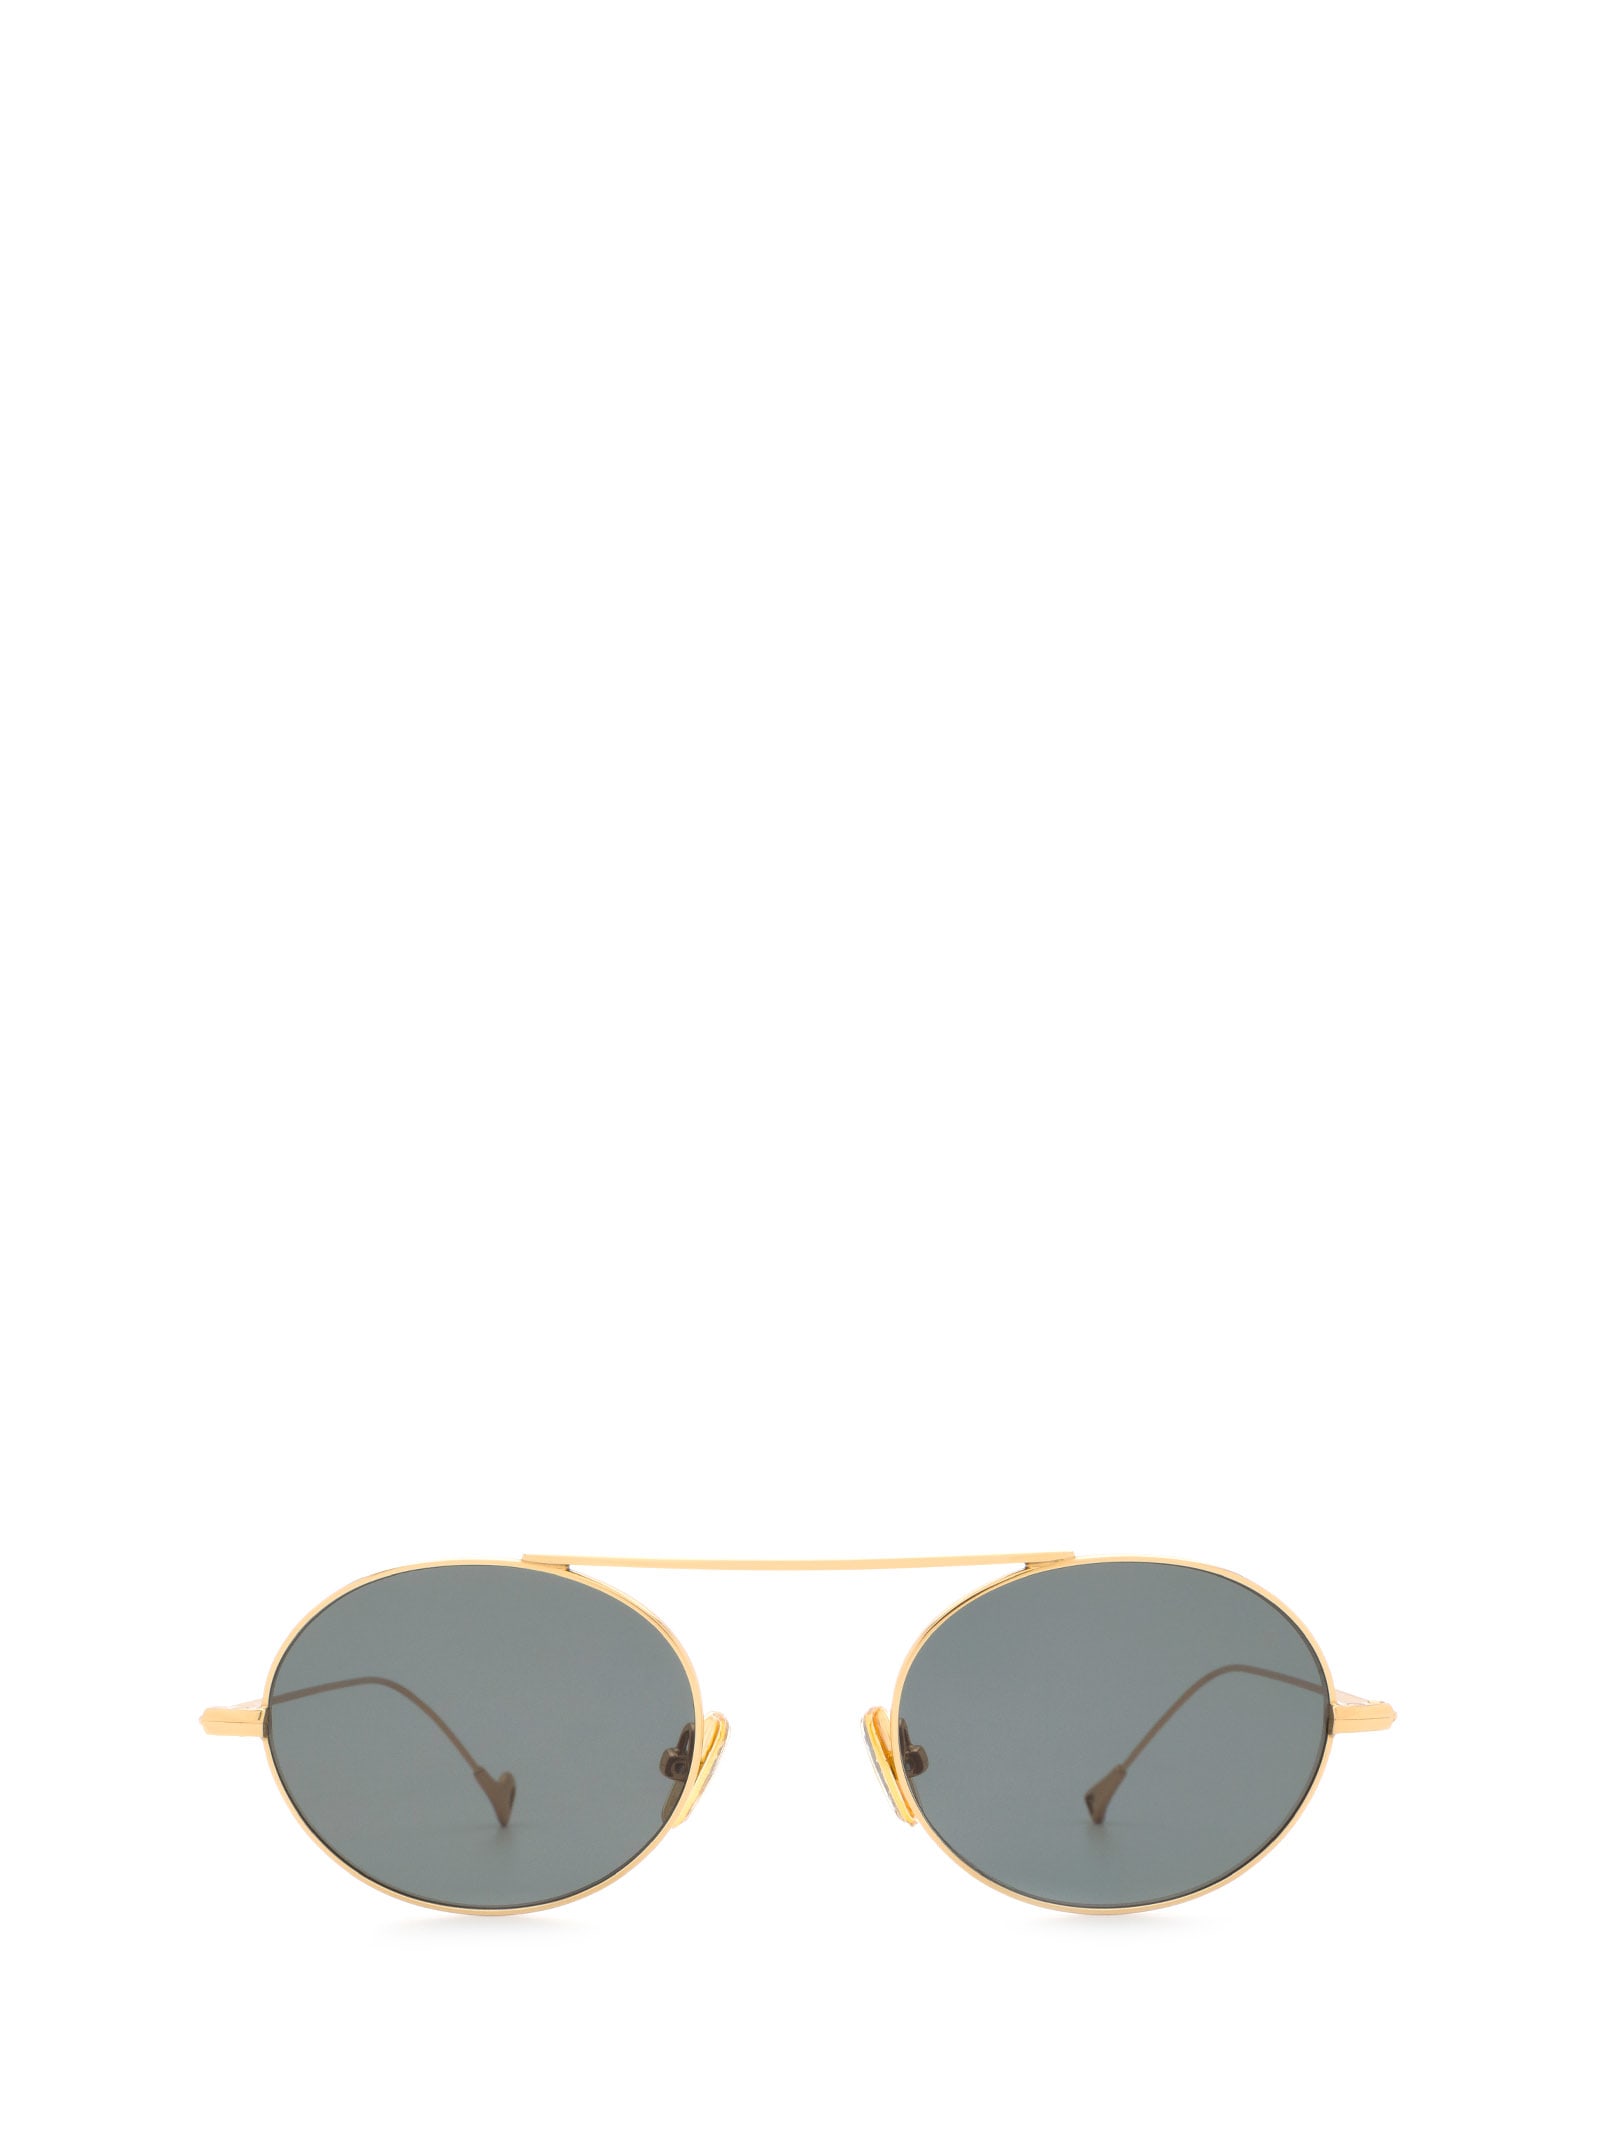 S.eularia Gold Sunglasses